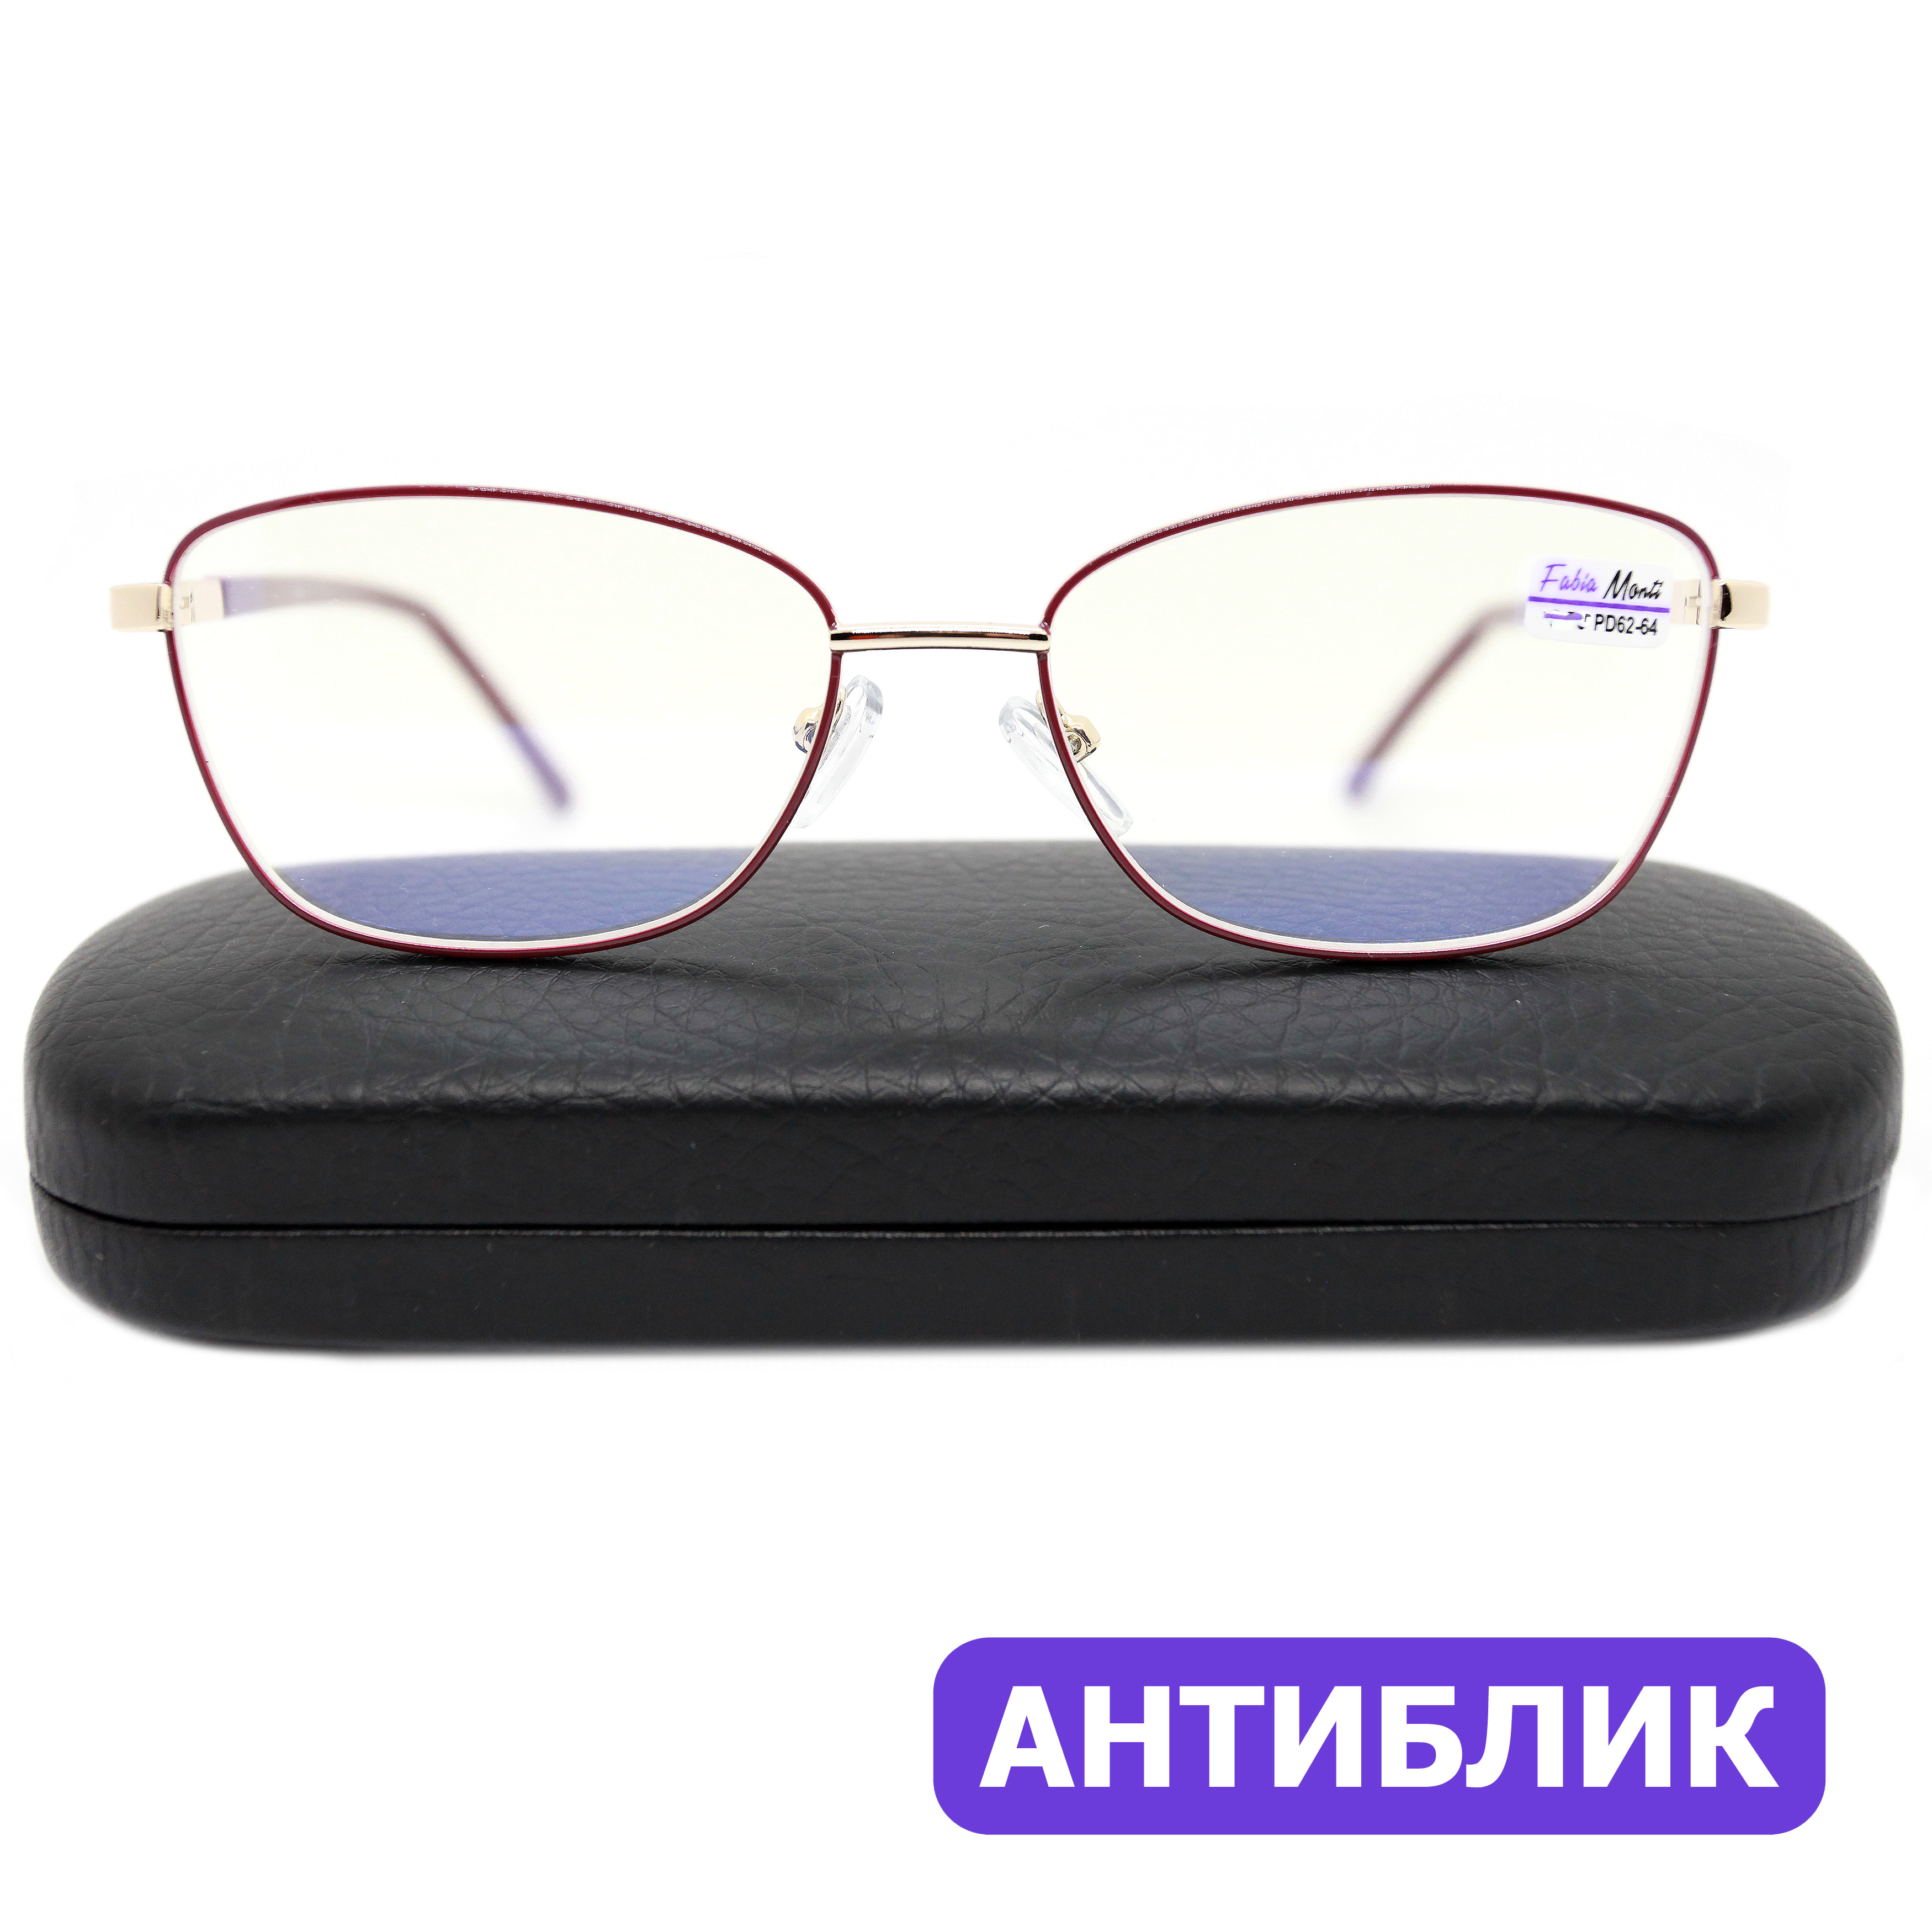 Готовые очки Fabia Monti 8935 +3.00, c футляром, антиблик, цвет бордовый, РЦ 62-64